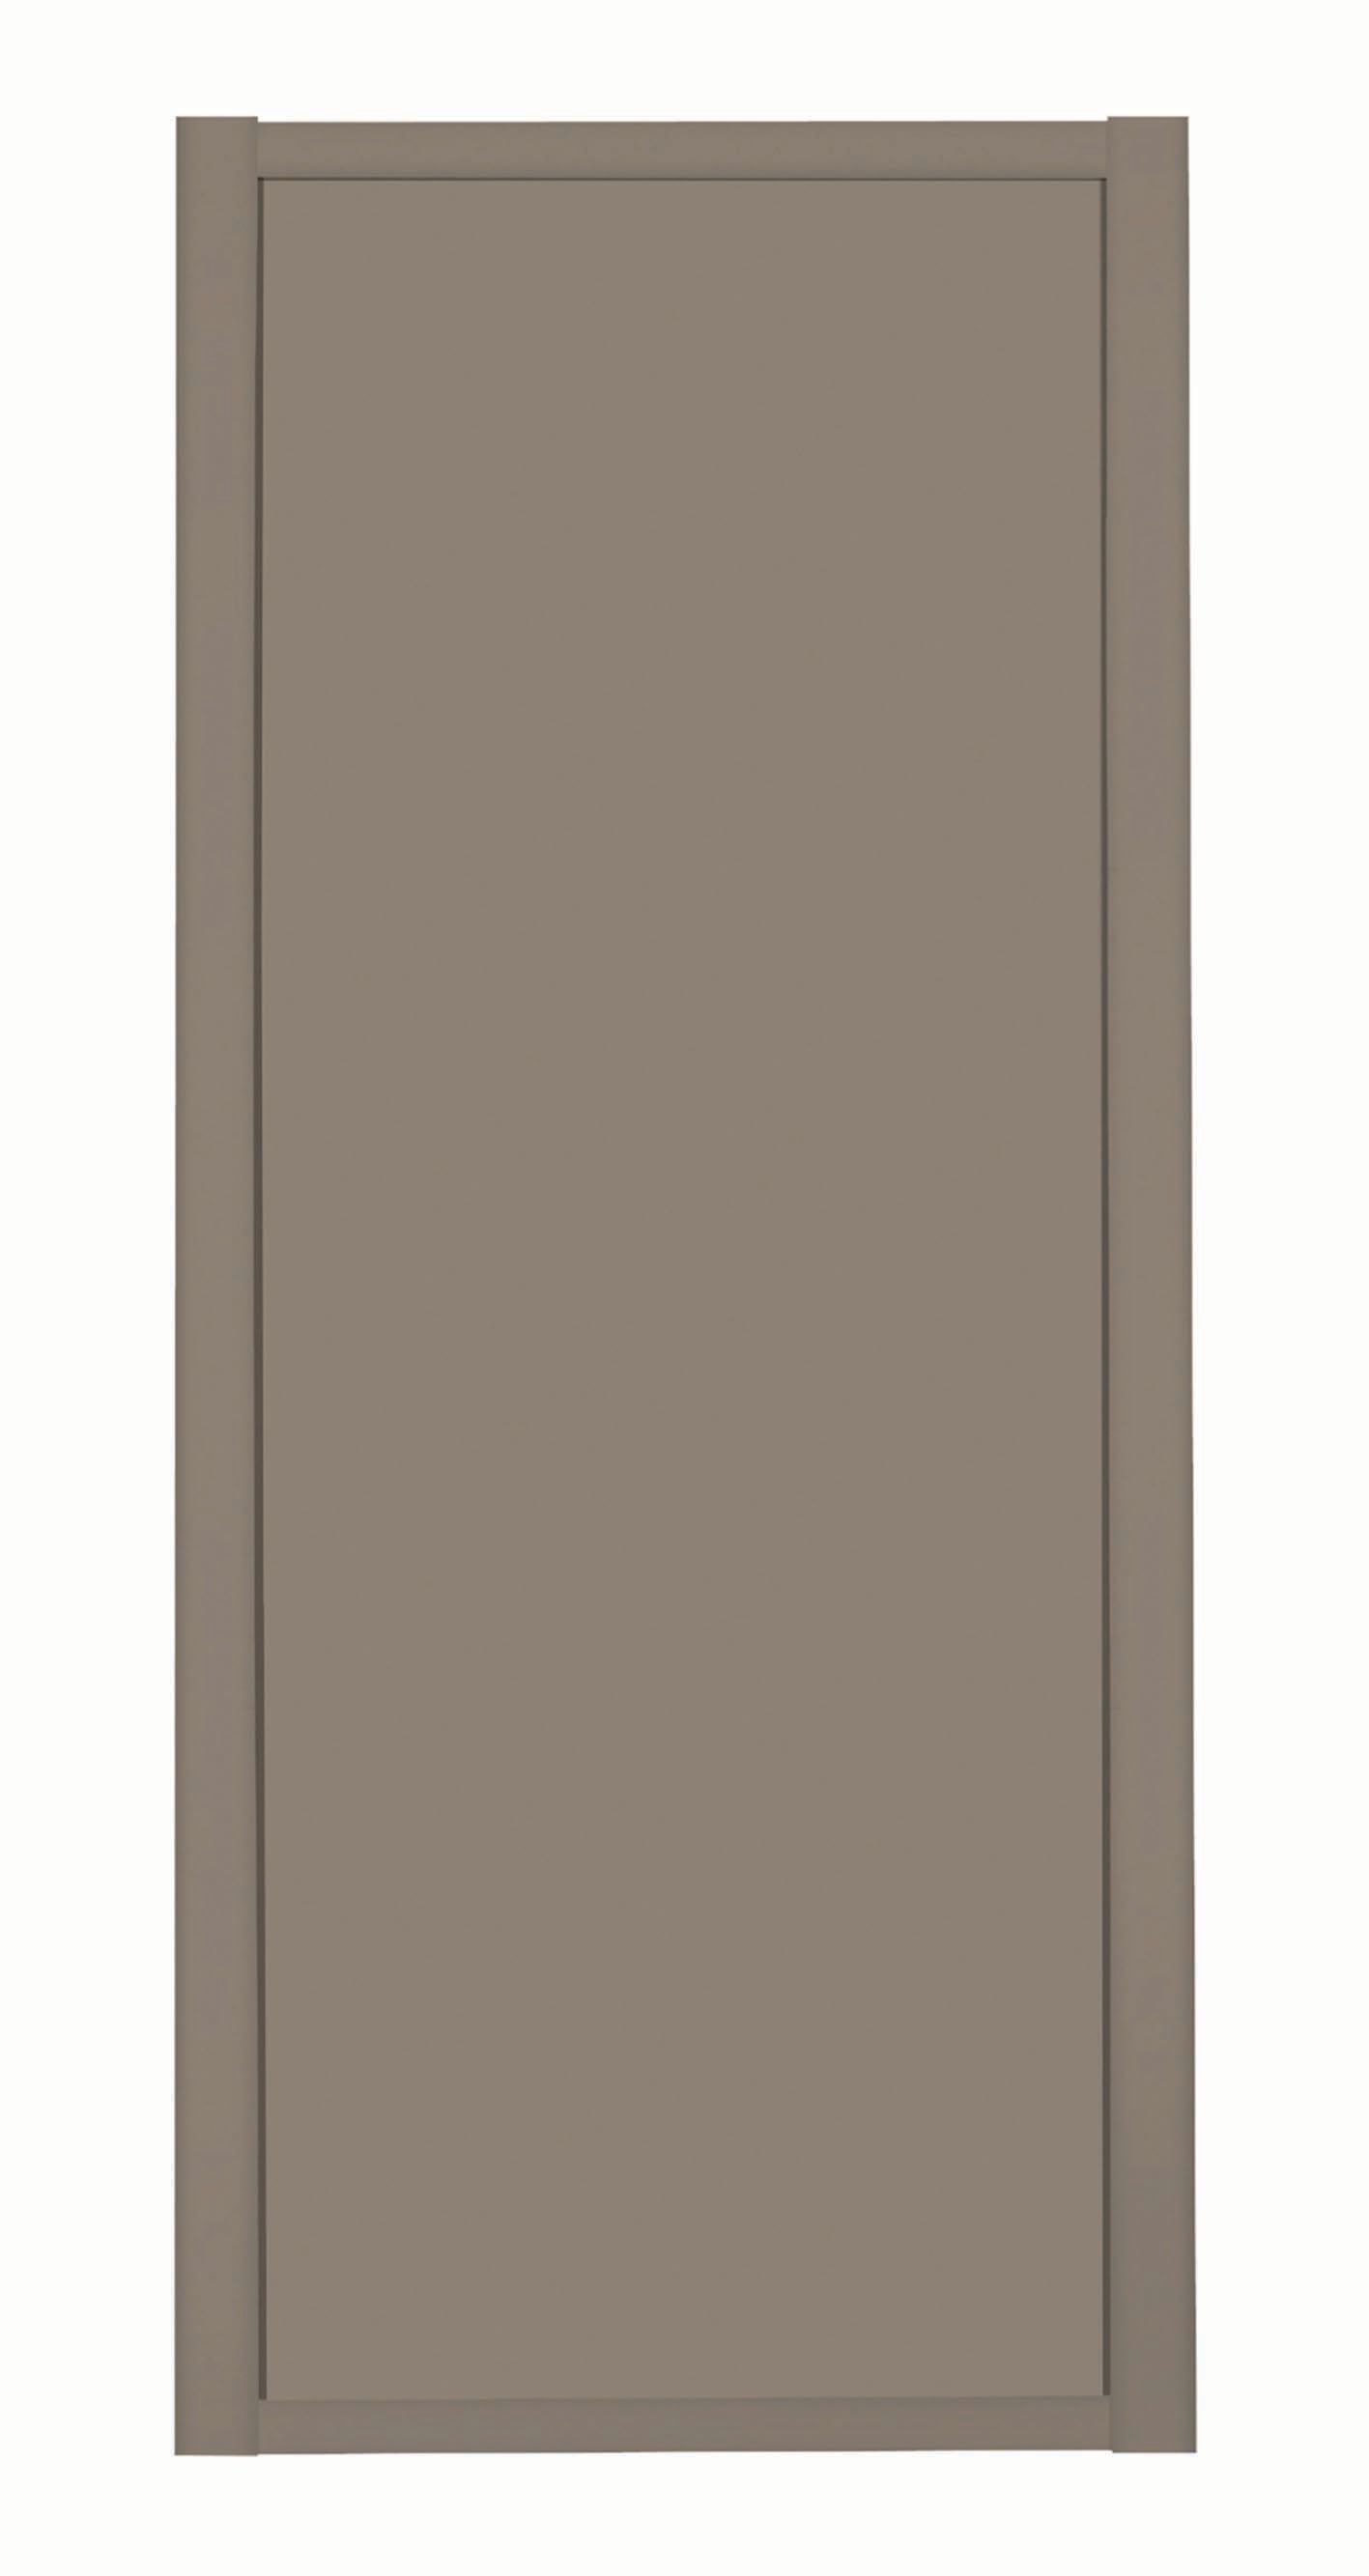 Spacepro Shaker 1 Panel Stone Grey Frame Stone